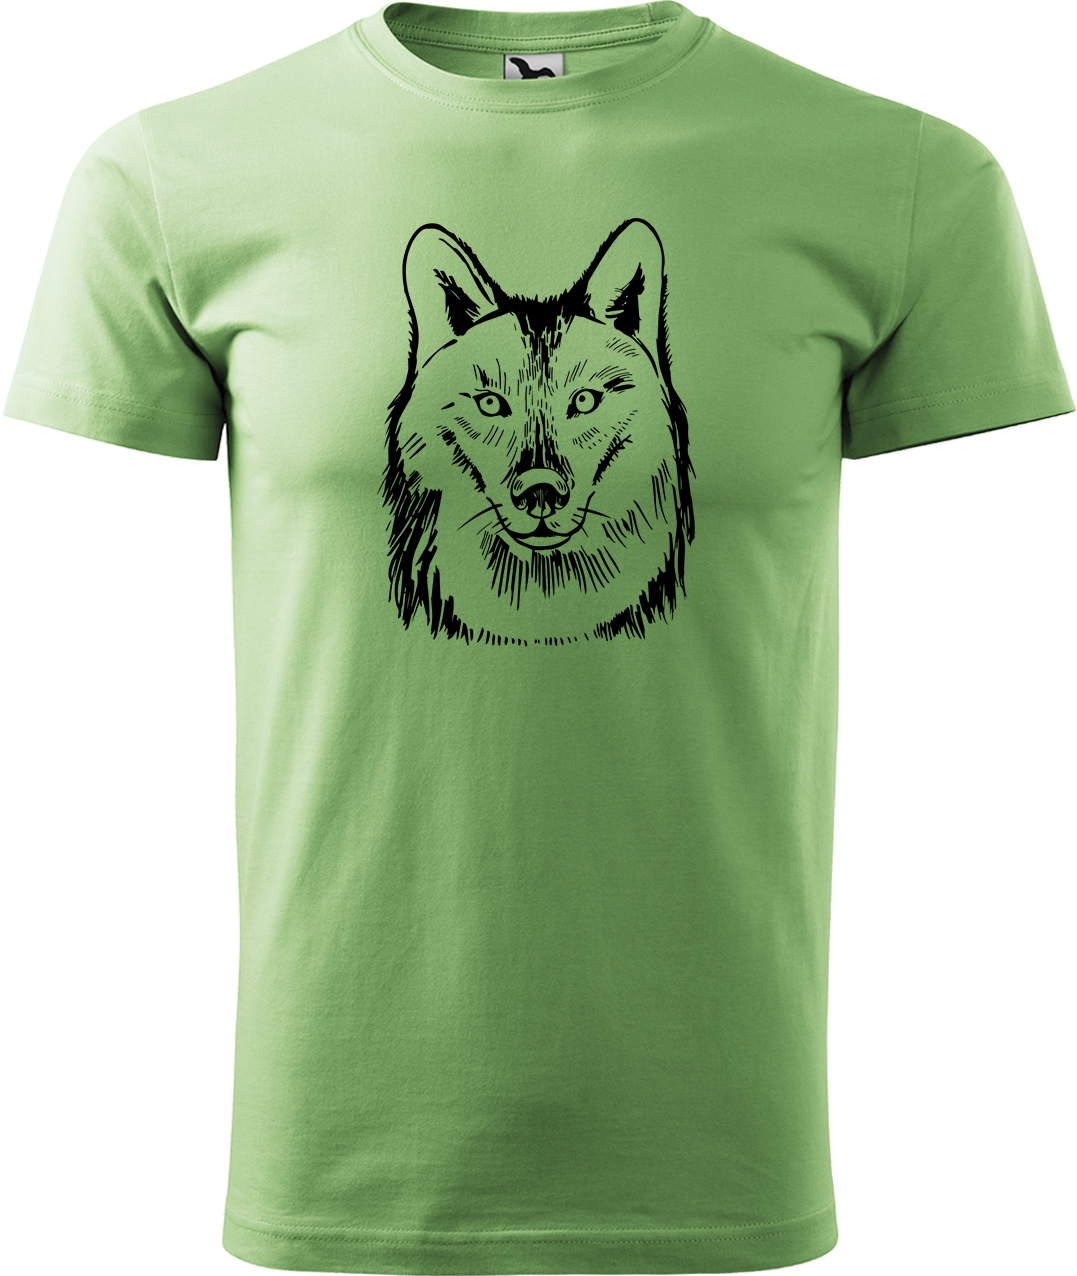 Pánské tričko s vlkem - Kresba vlka Velikost: L, Barva: Trávově zelená (39), Střih: pánský